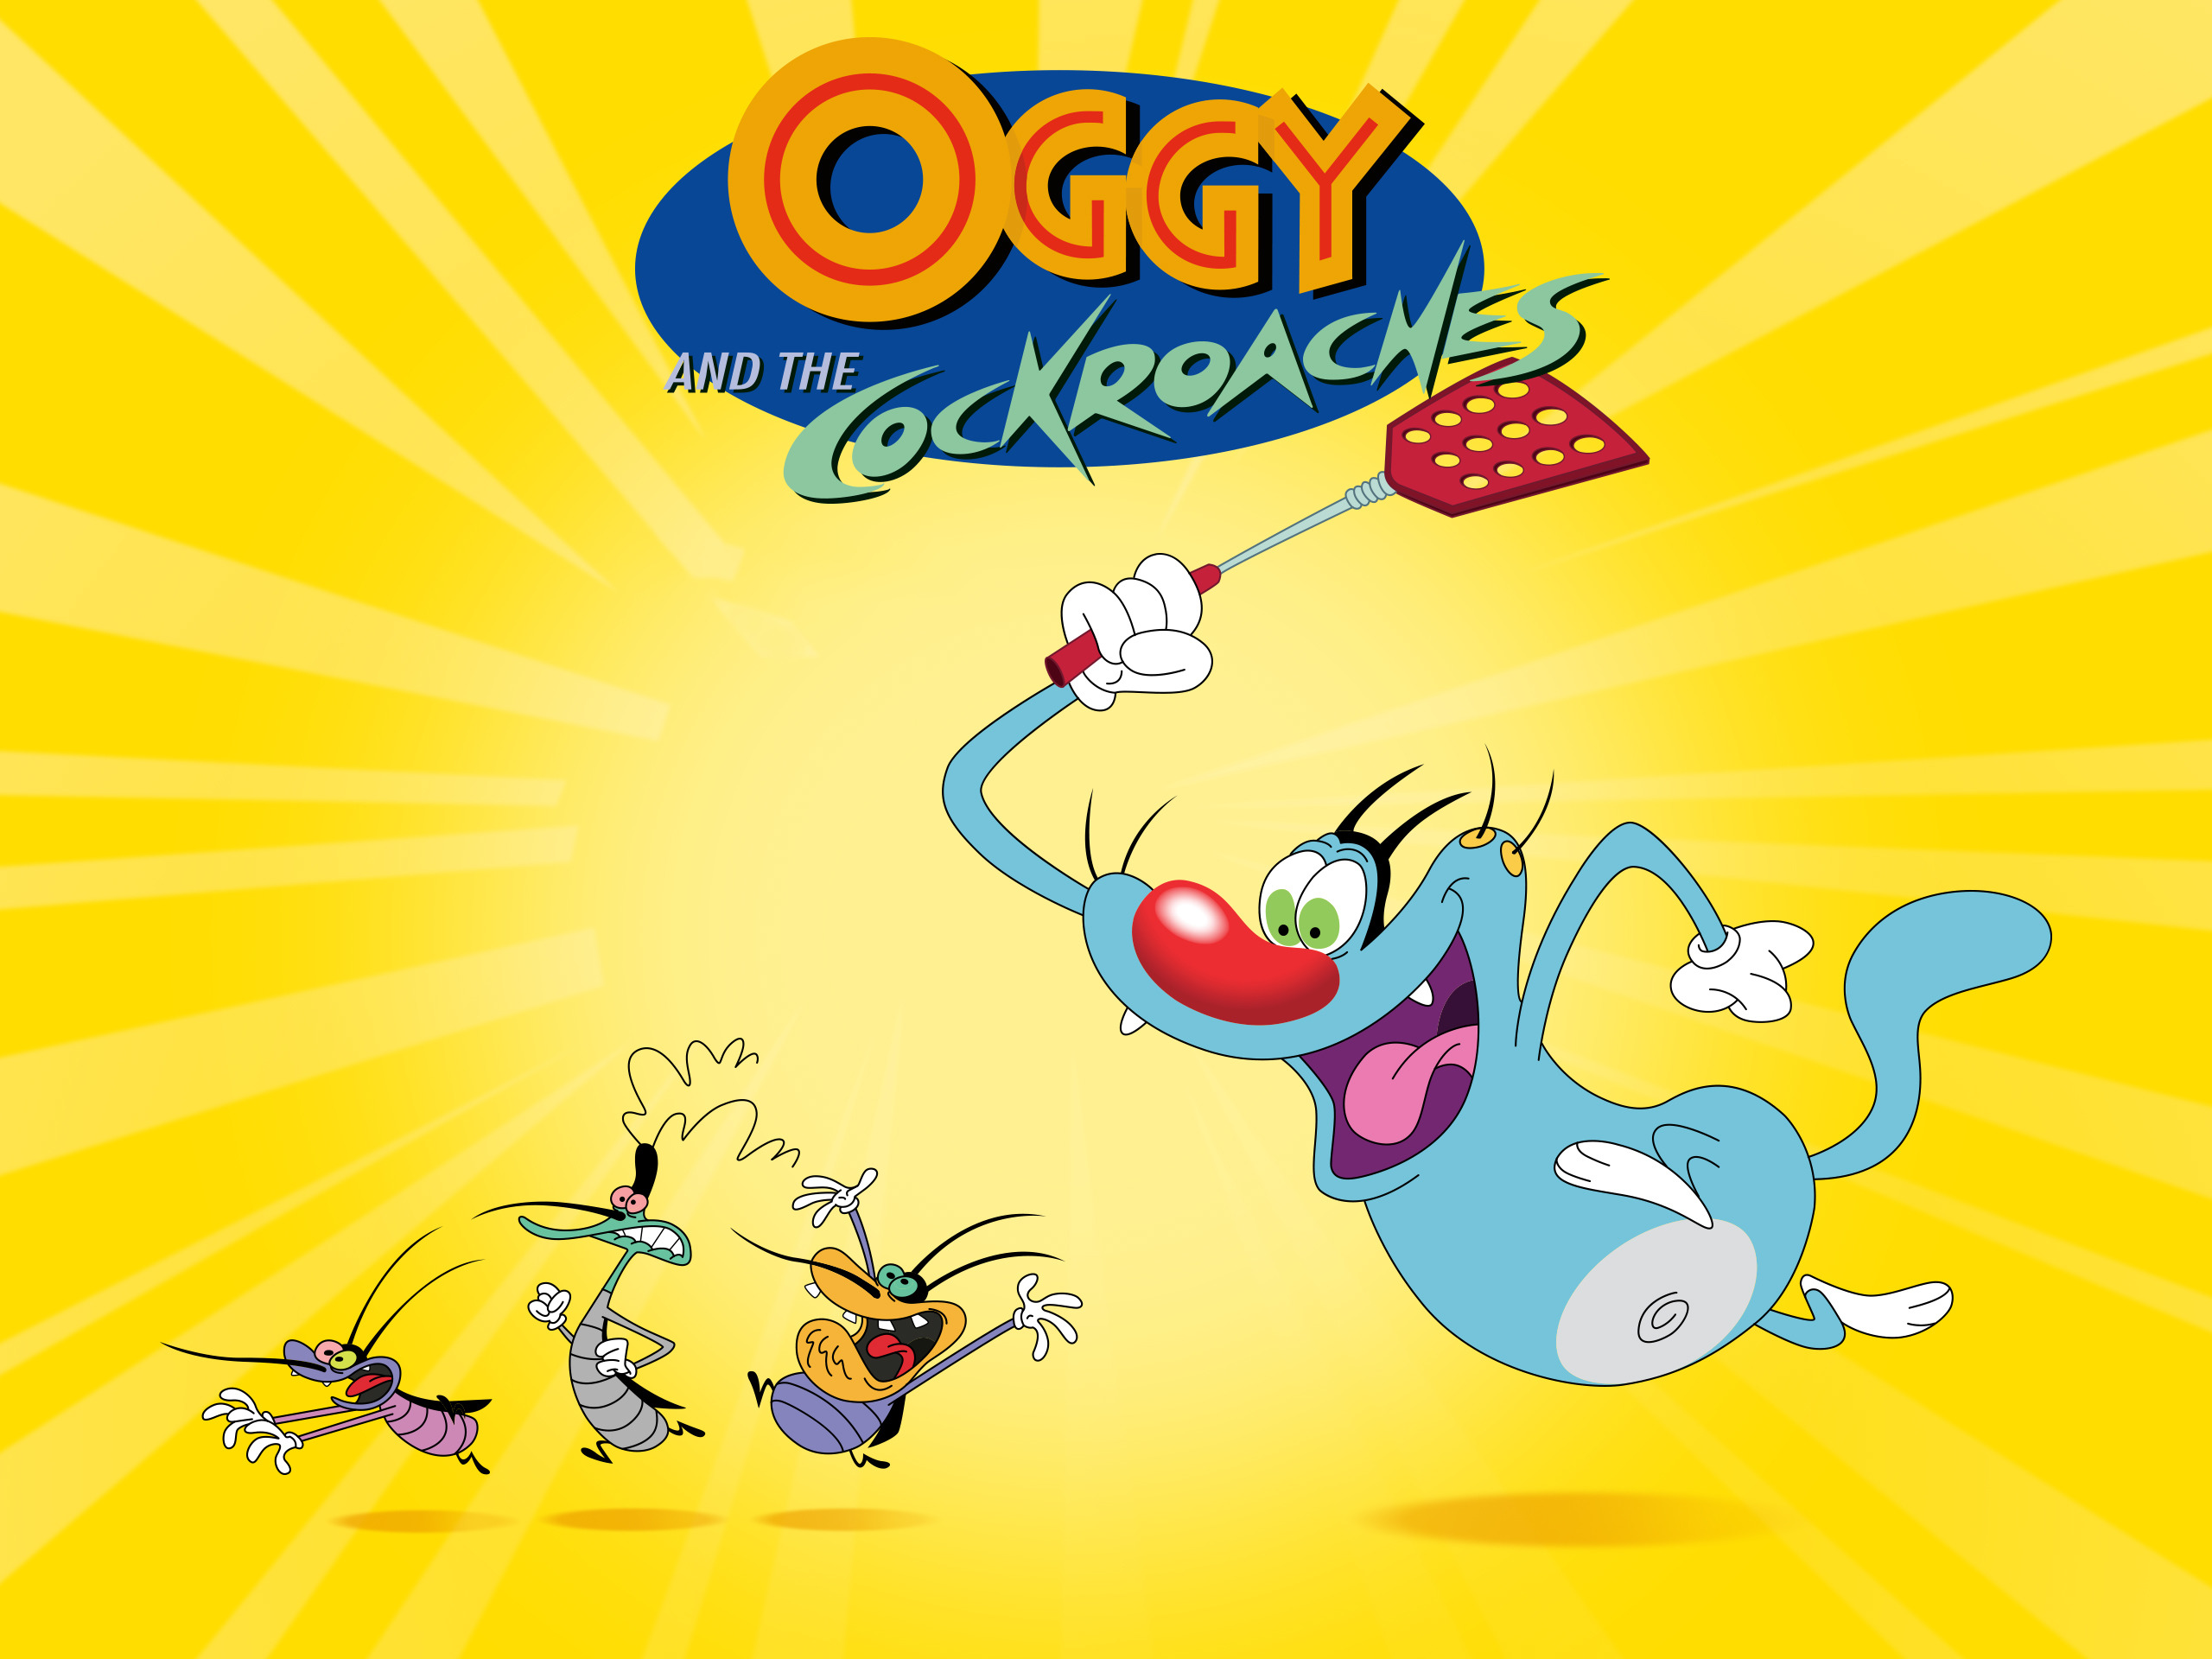 Hình Ảnh Oggy Tinh Nghịch: Bạn có yêu thích Oggy Tinh Nghịch không? Nếu vậy, hãy tìm hiểu thêm về thế giới Oggy với những hình ảnh thú vị và độc đáo của chúng tôi. Nhanh chóng tham gia và khám phá những chuyến phiêu lưu hấp dẫn và đầy màu sắc của Oggy cùng bạn bè.